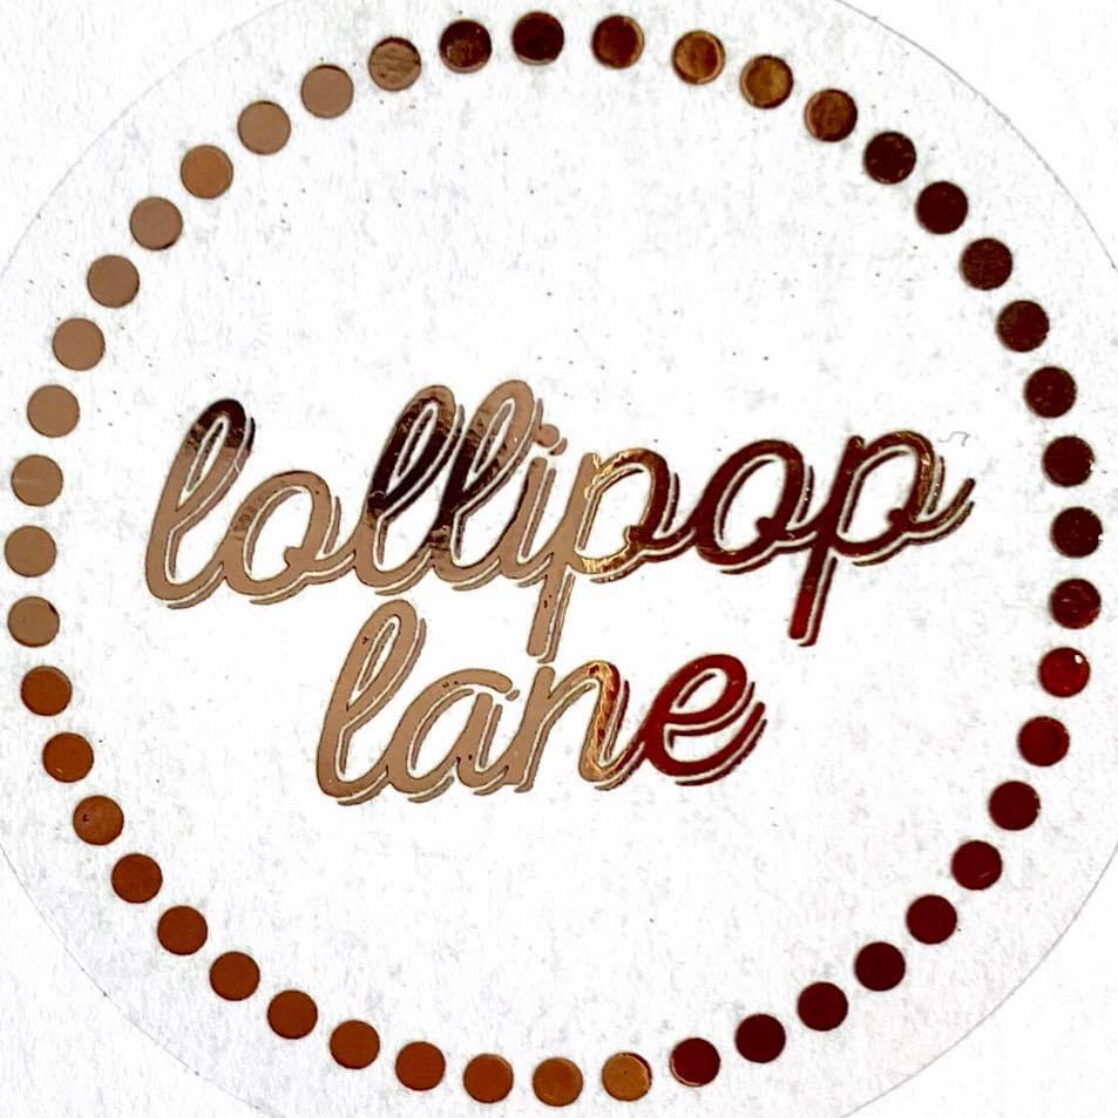 Lollipop Lane